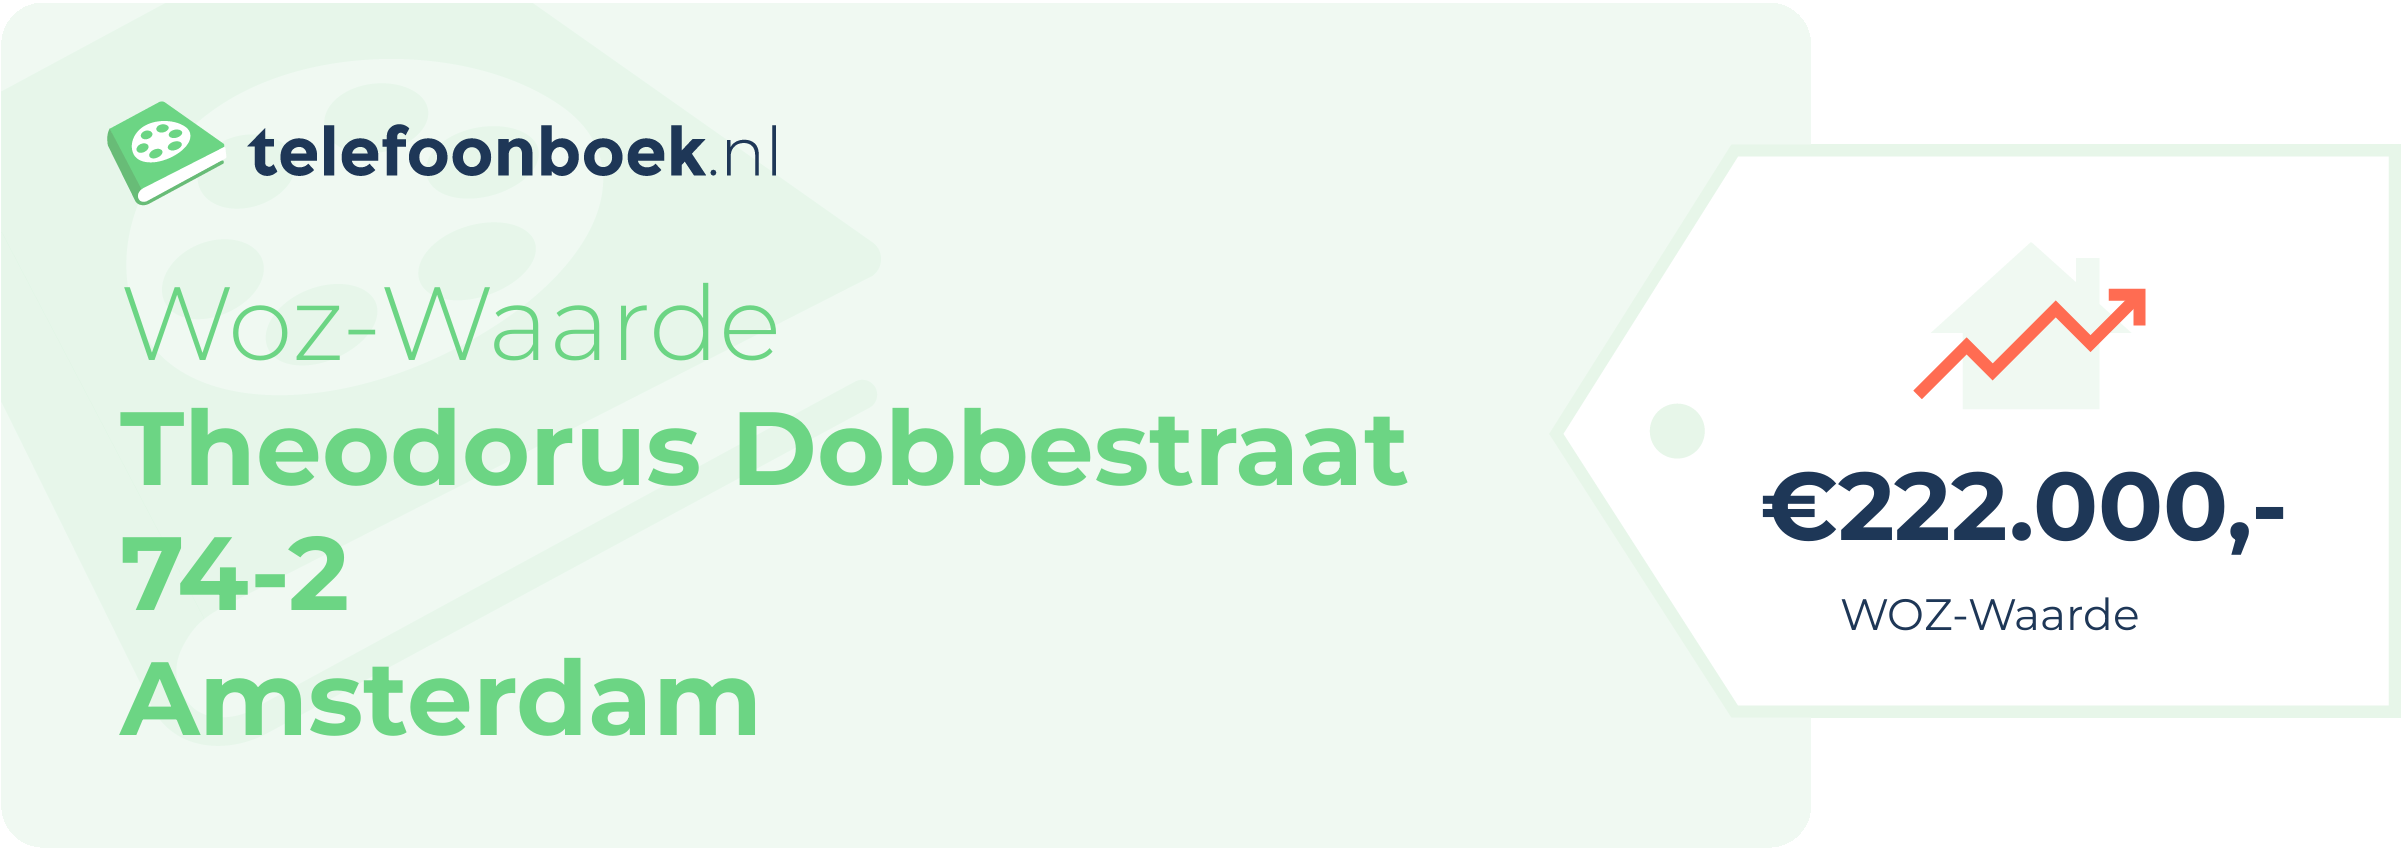 WOZ-waarde Theodorus Dobbestraat 74-2 Amsterdam